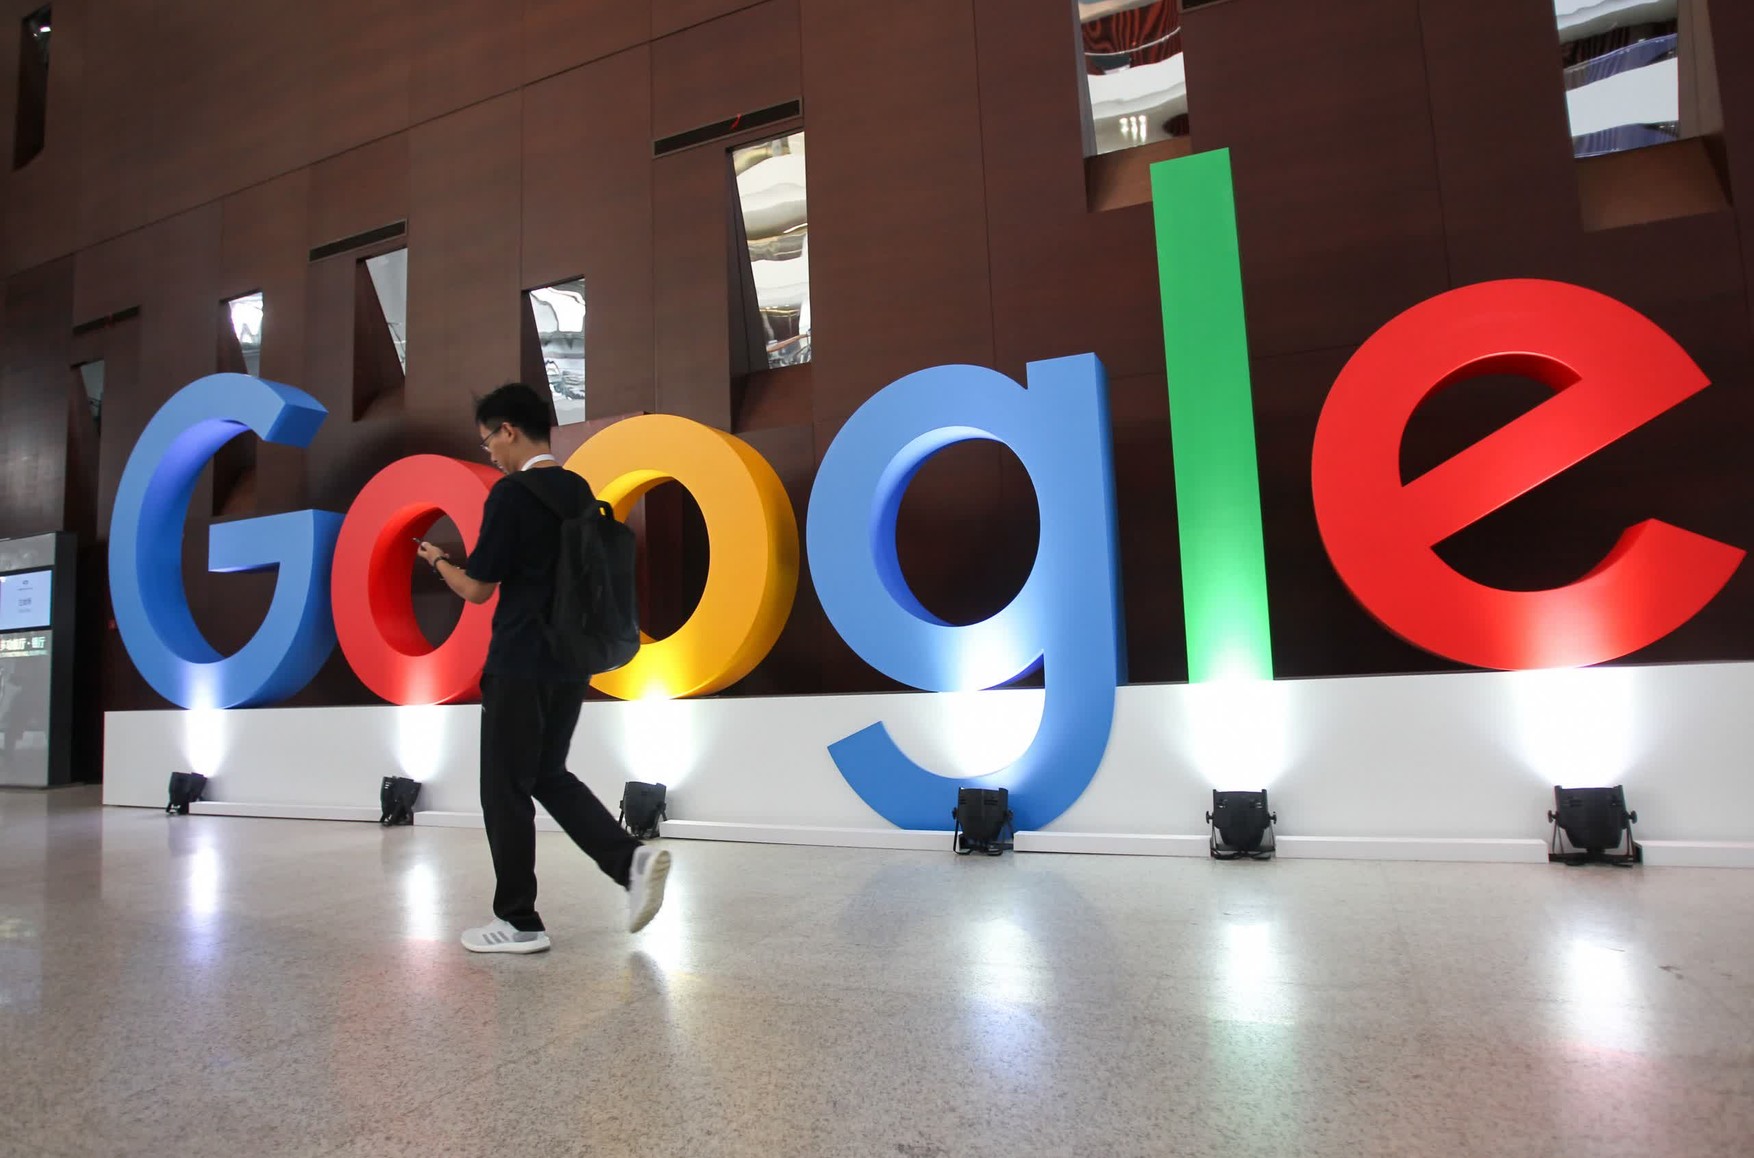 Суд арестовал еще 1 млрд рублей на счетах российского подразделения Google по искам ВГТРК